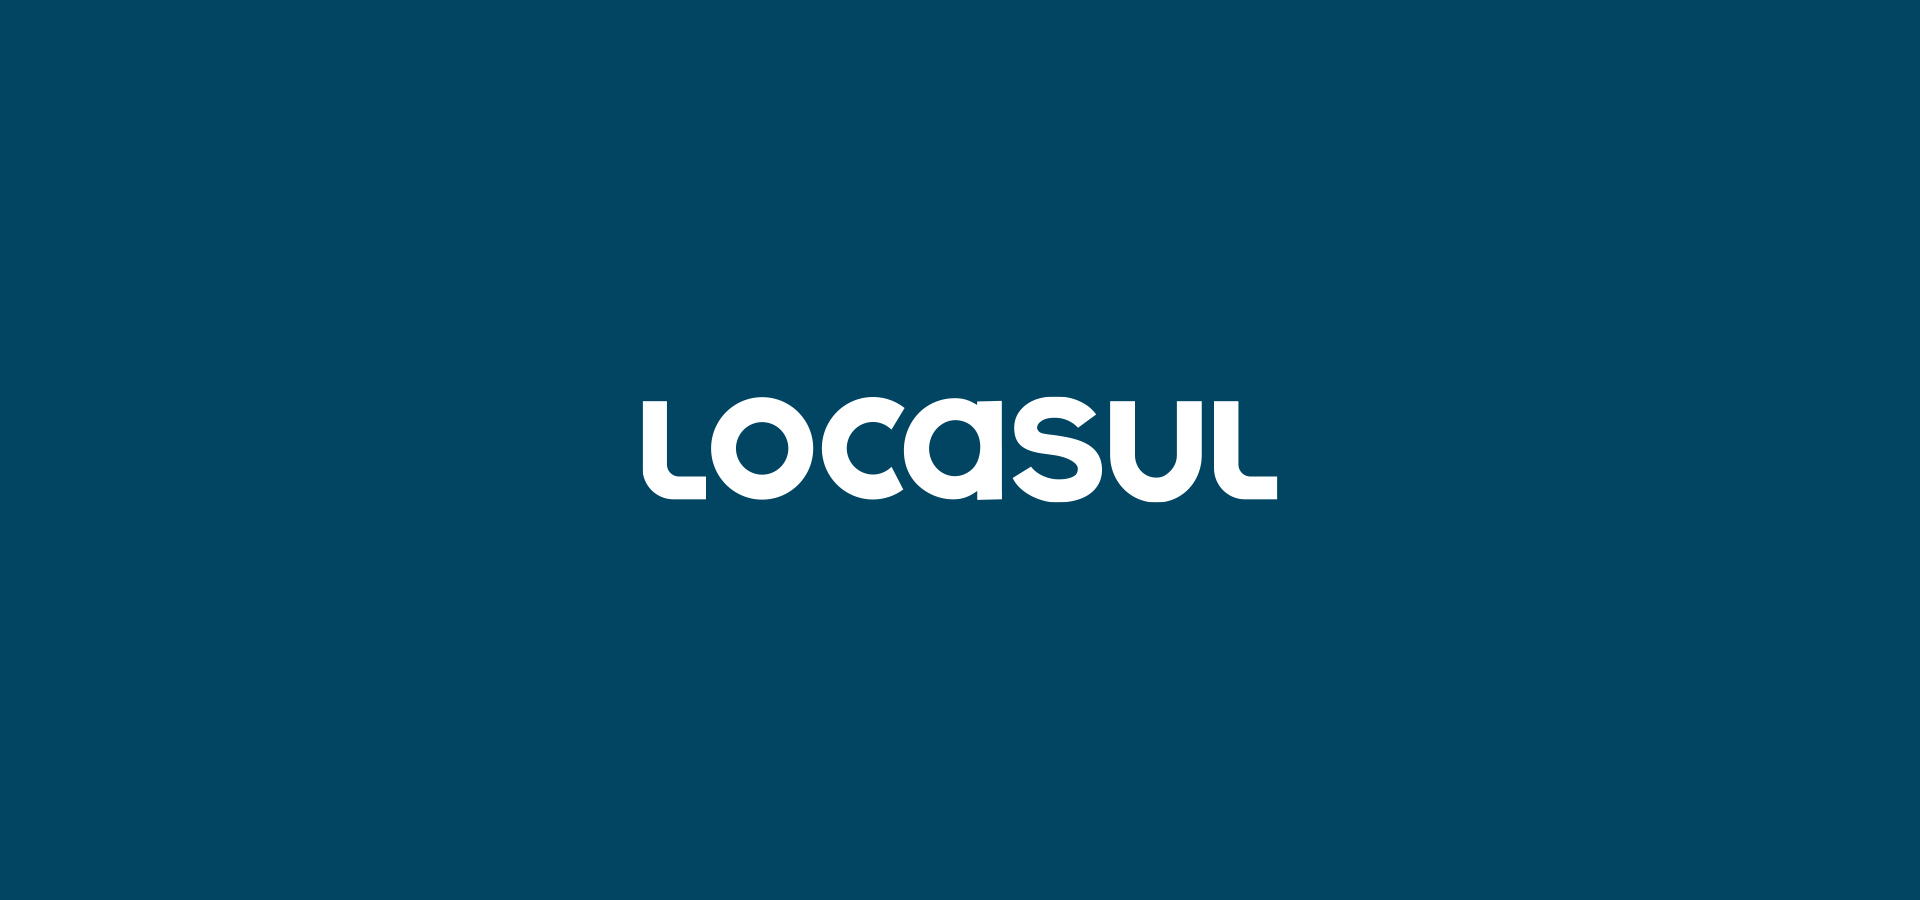 tipografia type character paleta locasul branding layout design linguagem visual publicidade marketing encantado porto alegre locadora sul pais brasil